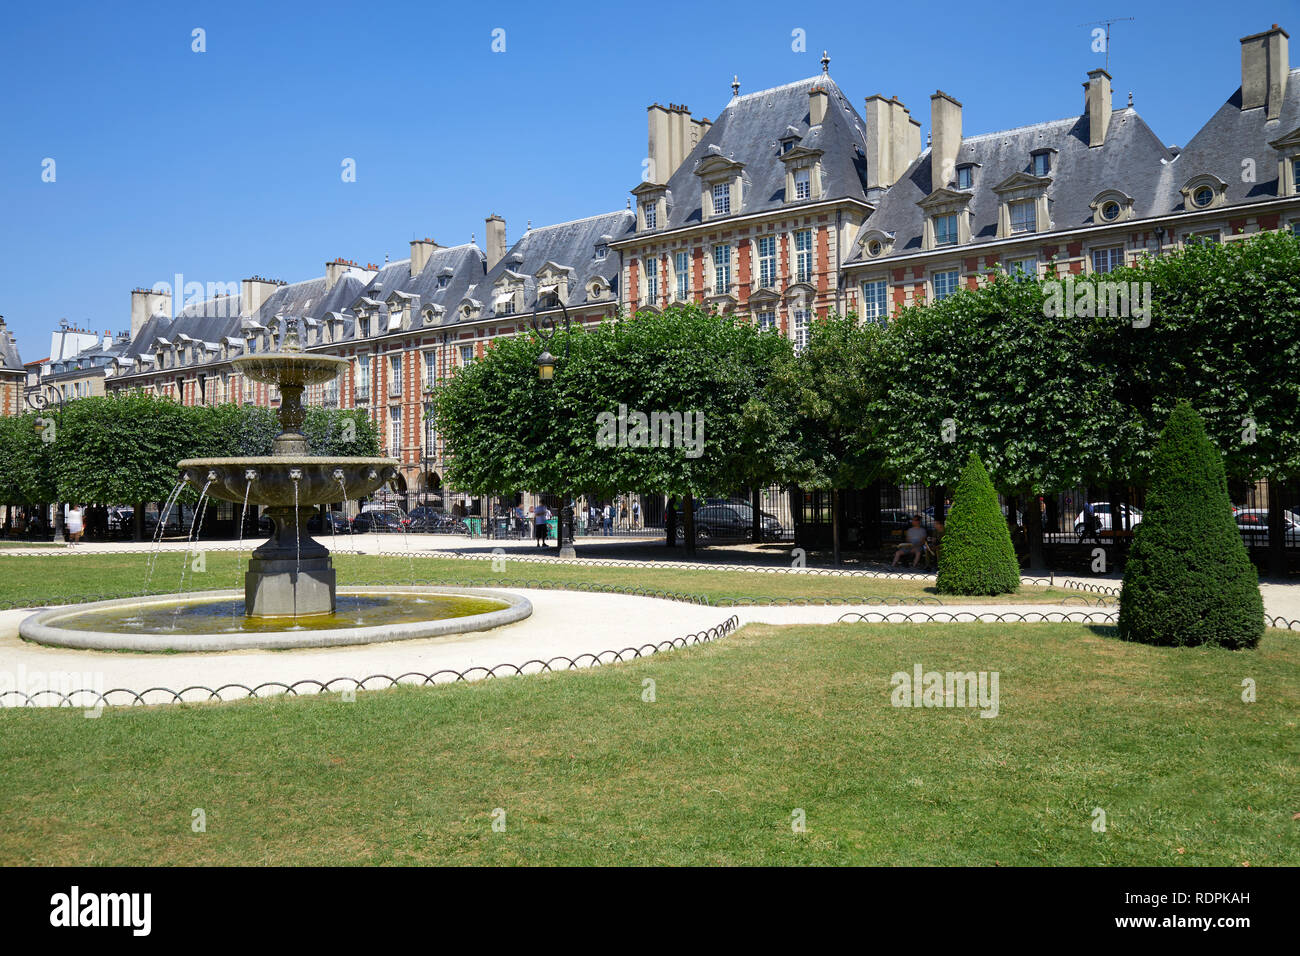 Place des Vosges, anciens bâtiments et jardin à Paris dans un beau jour d'été, ciel bleu clair Banque D'Images